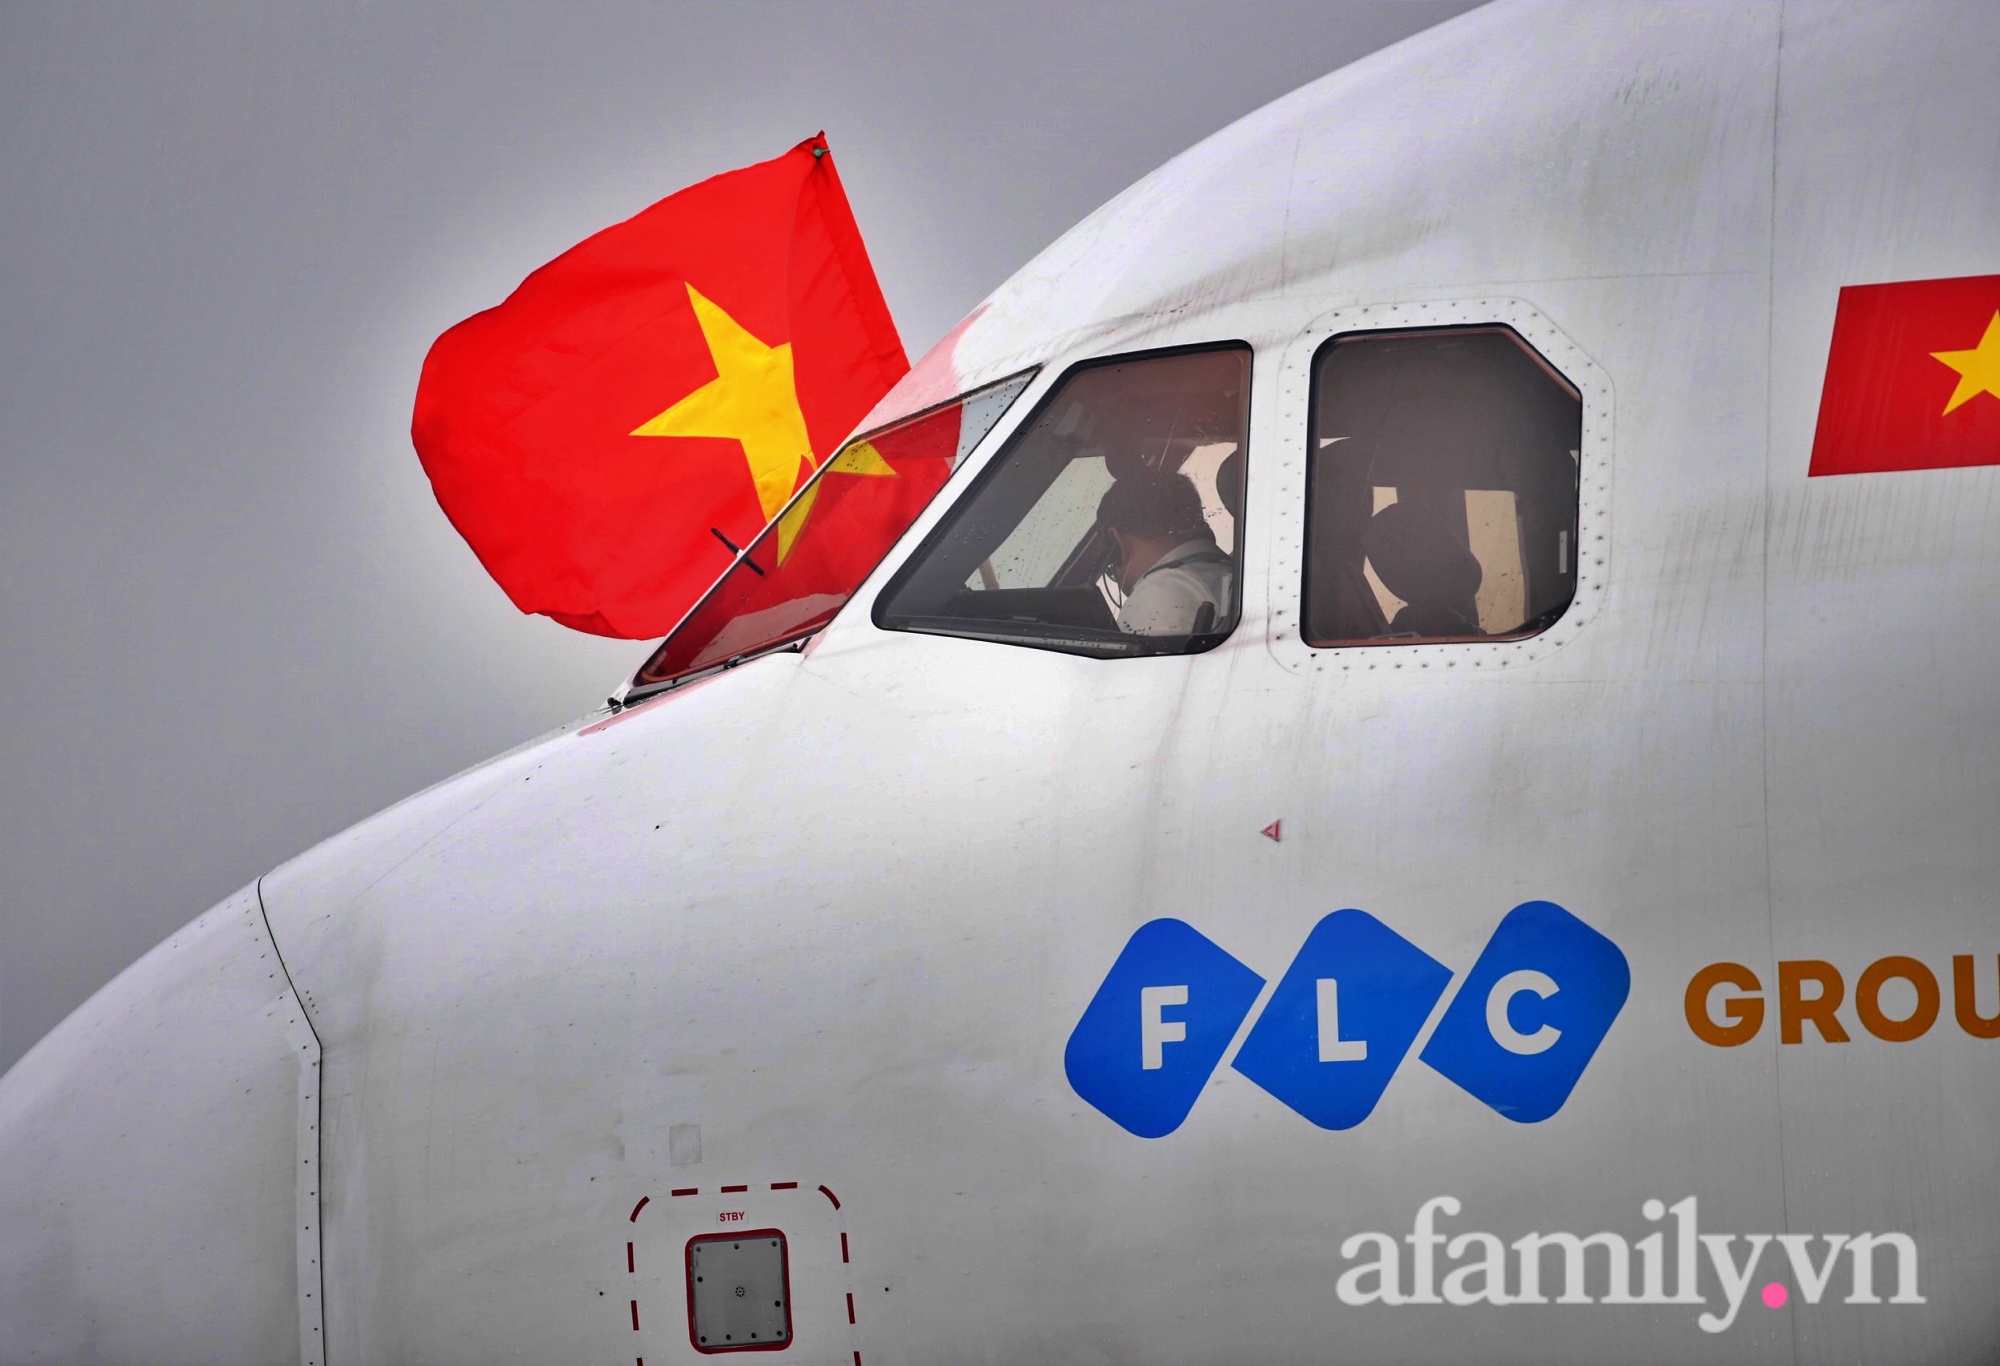 NÓNG: Chuyên cơ chở những cô gái vàng của bóng đá Việt Nam vừa hạ cánh sân bay Nội Bài - Ảnh 2.